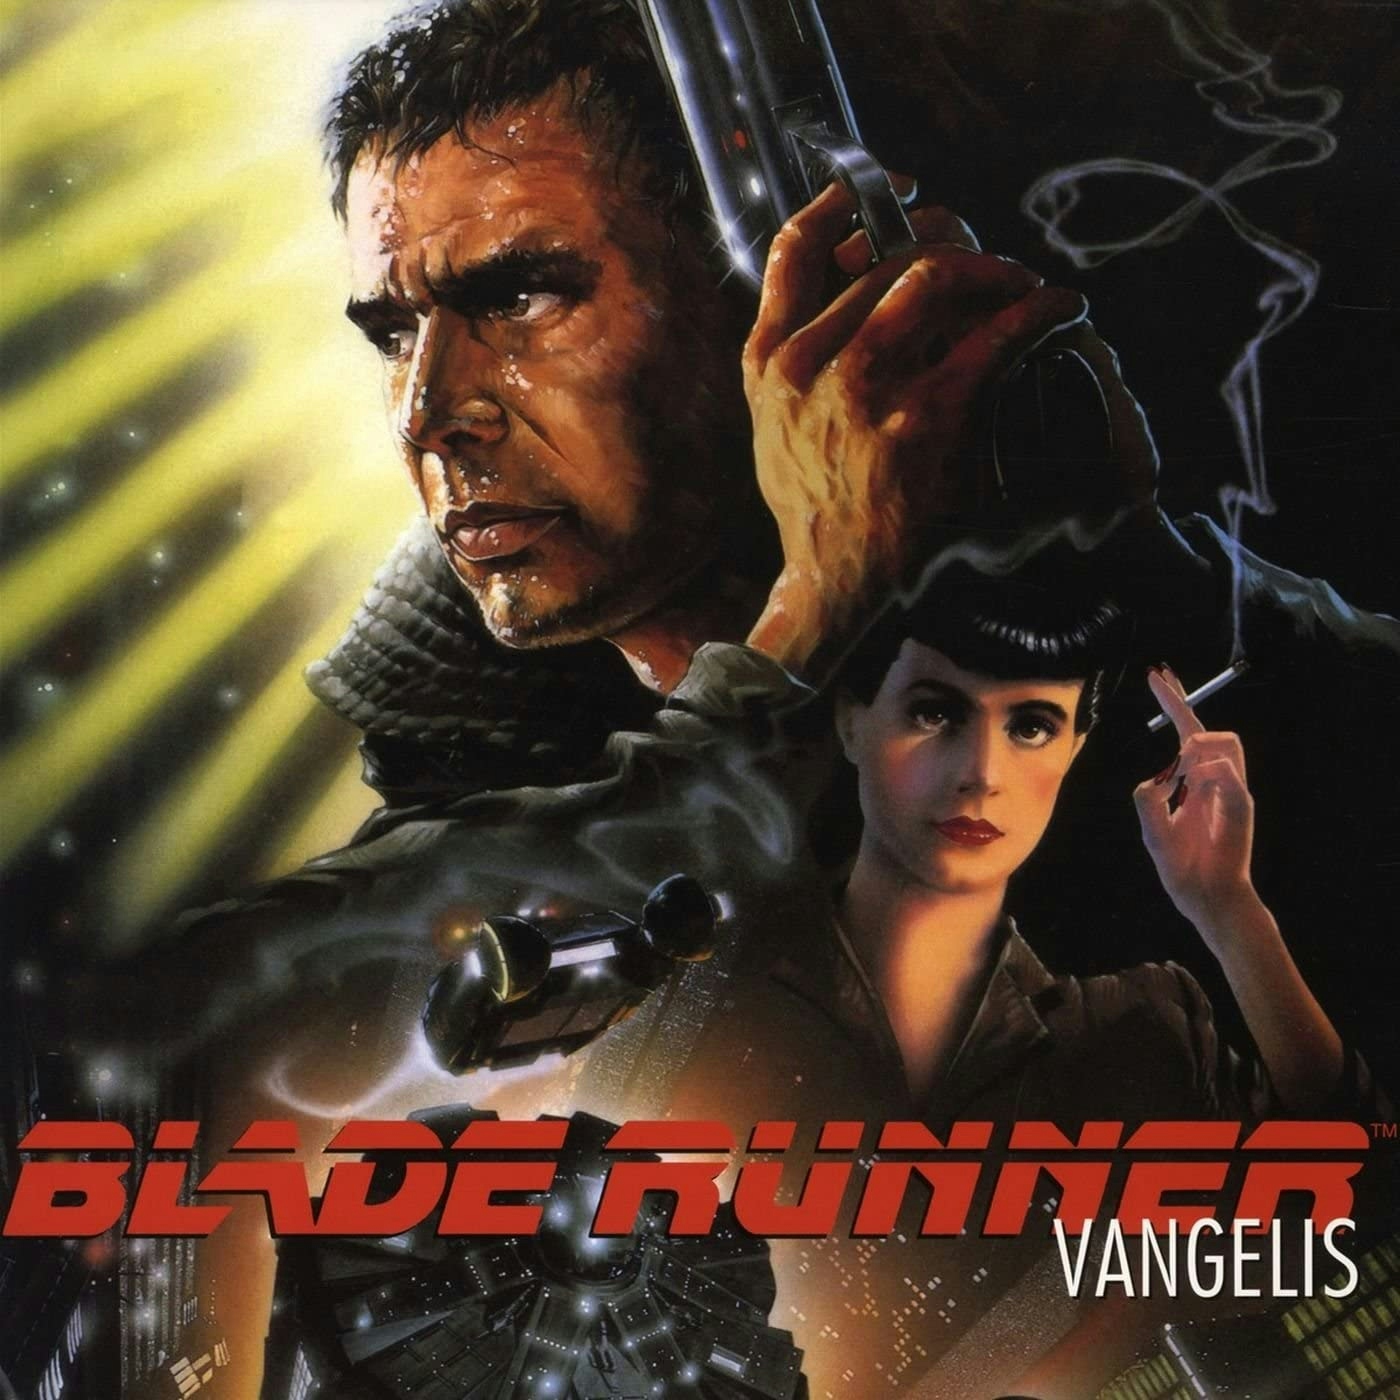 Album artwork for Blade Runner OST by Vangelis